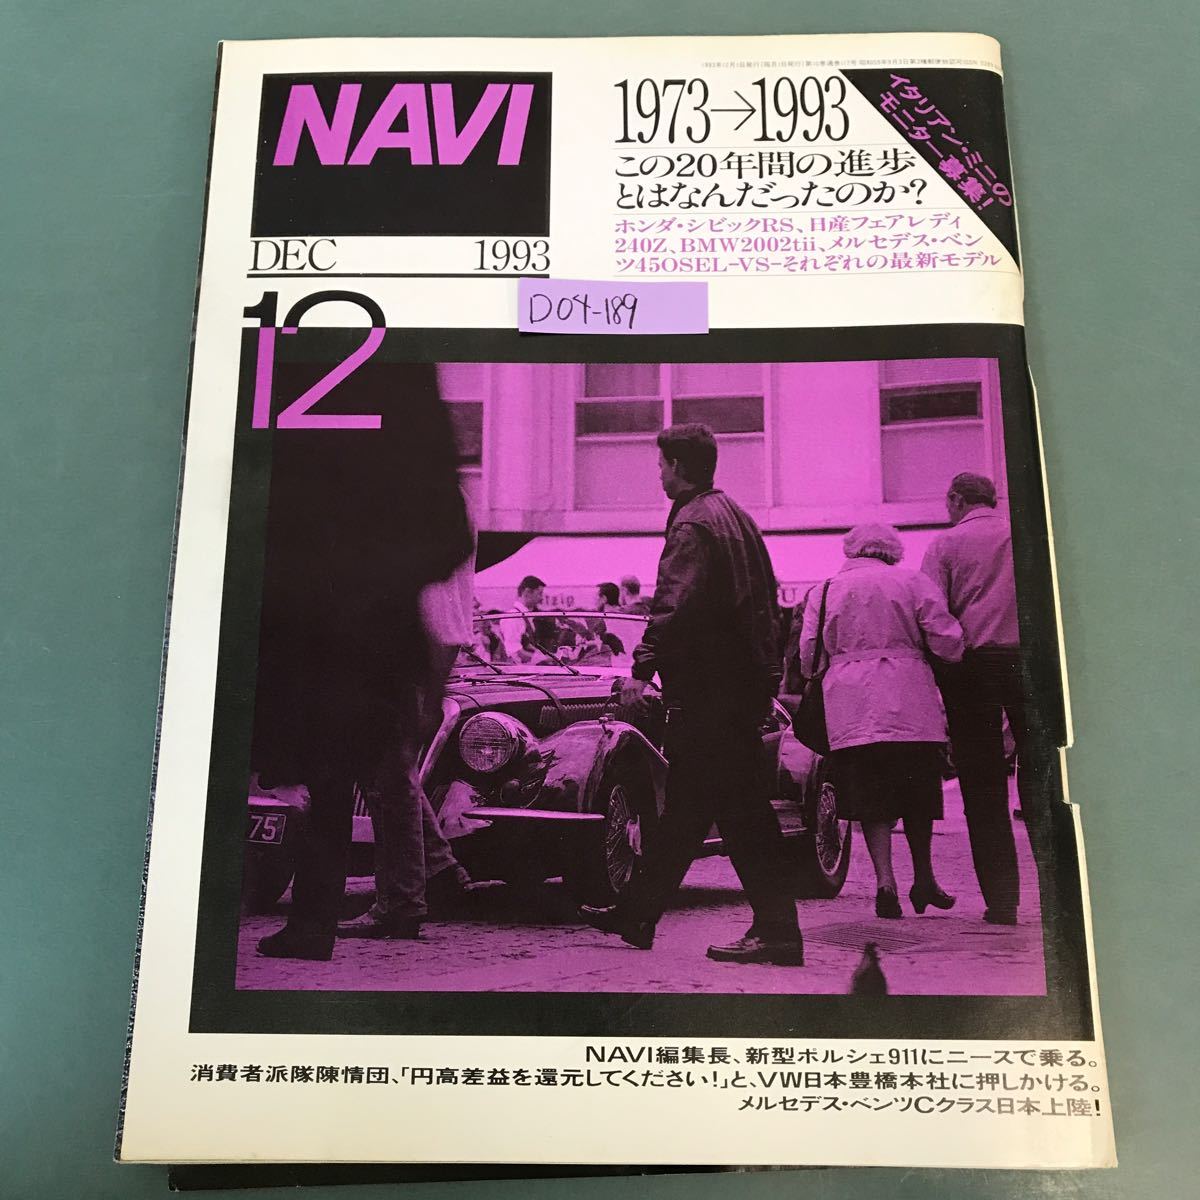 D04-189 NAVI 1993年12月号 No.117